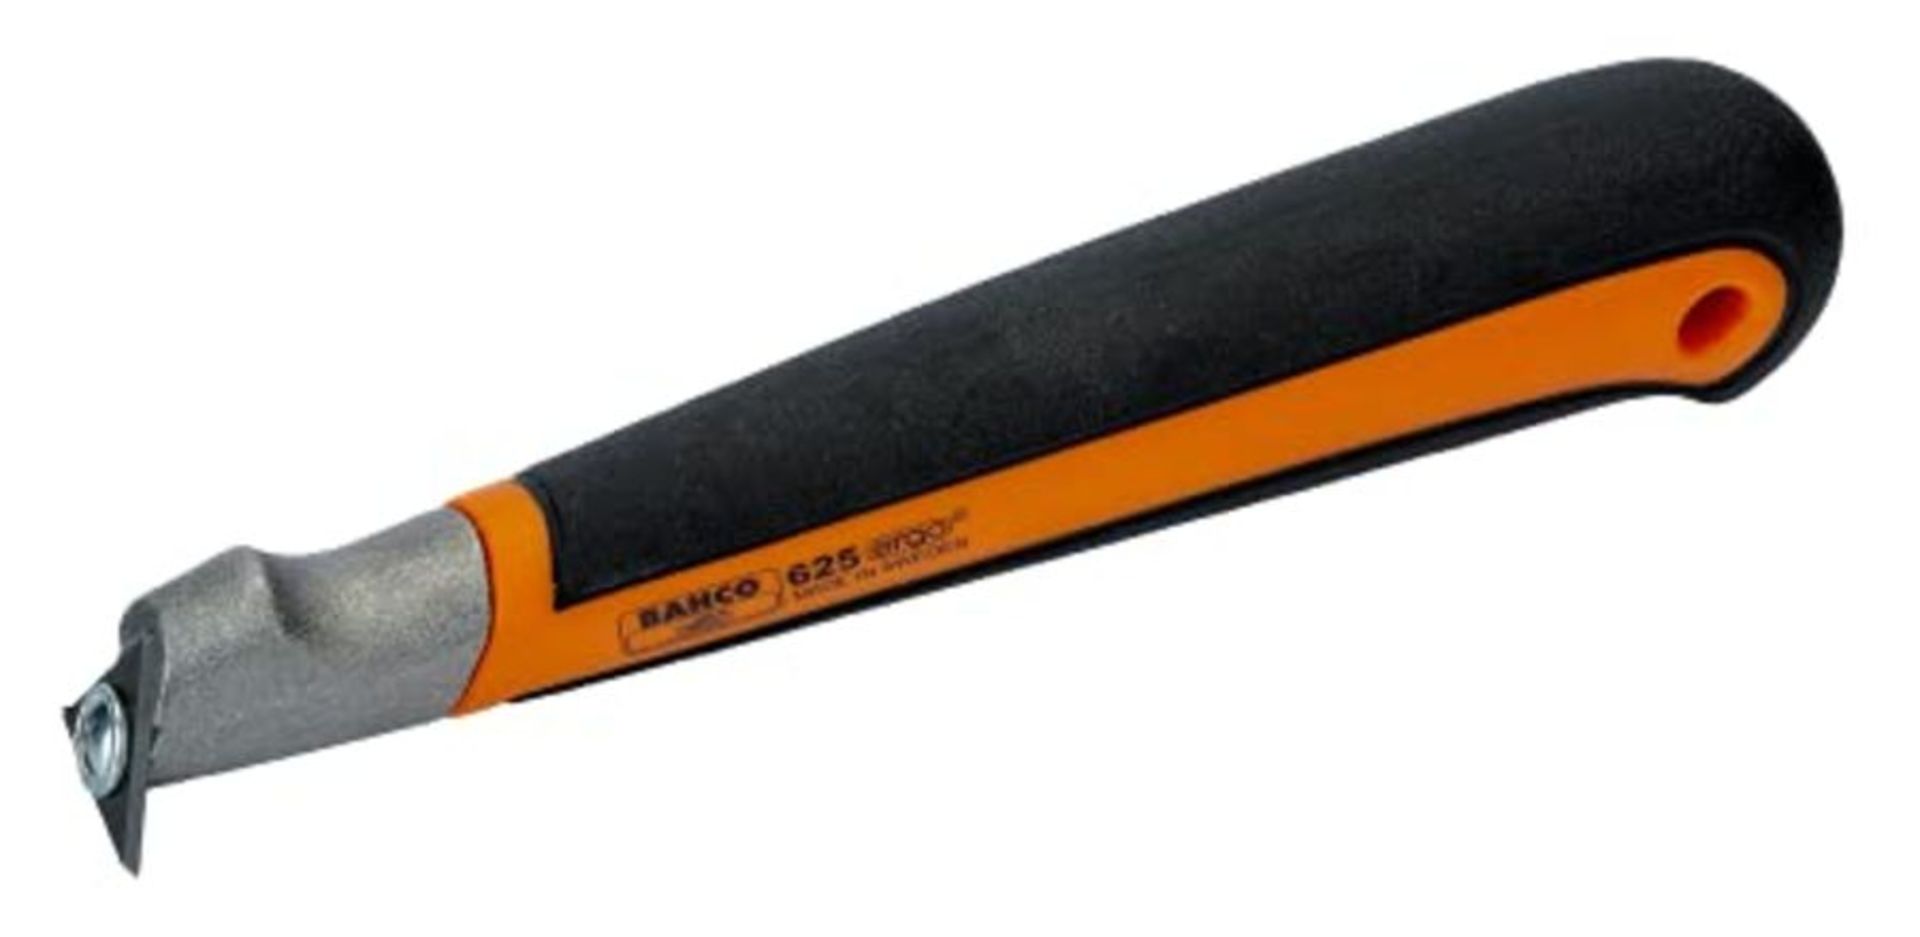 Bahco Taschenfarbschaber Ergo 625 mit Holster Klingenbreite 25 mm